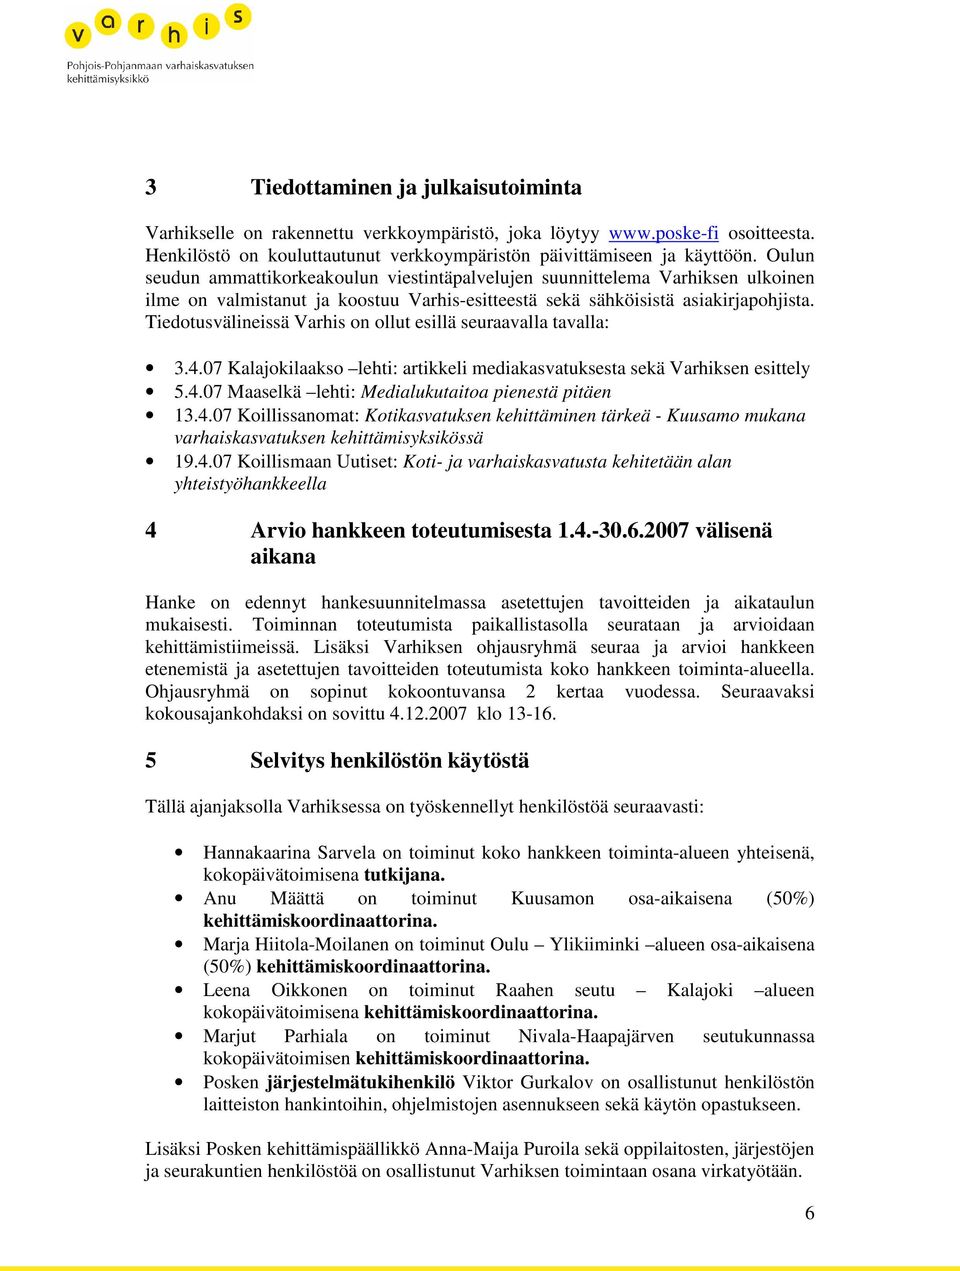 Tiedotusvälineissä Varhis on ollut esillä seuraavalla tavalla: 3.4.07 Kalajokilaakso lehti: artikkeli mediakasvatuksesta sekä Varhiksen esittely 5.4.07 Maaselkä lehti: Medialukutaitoa pienestä pitäen 13.